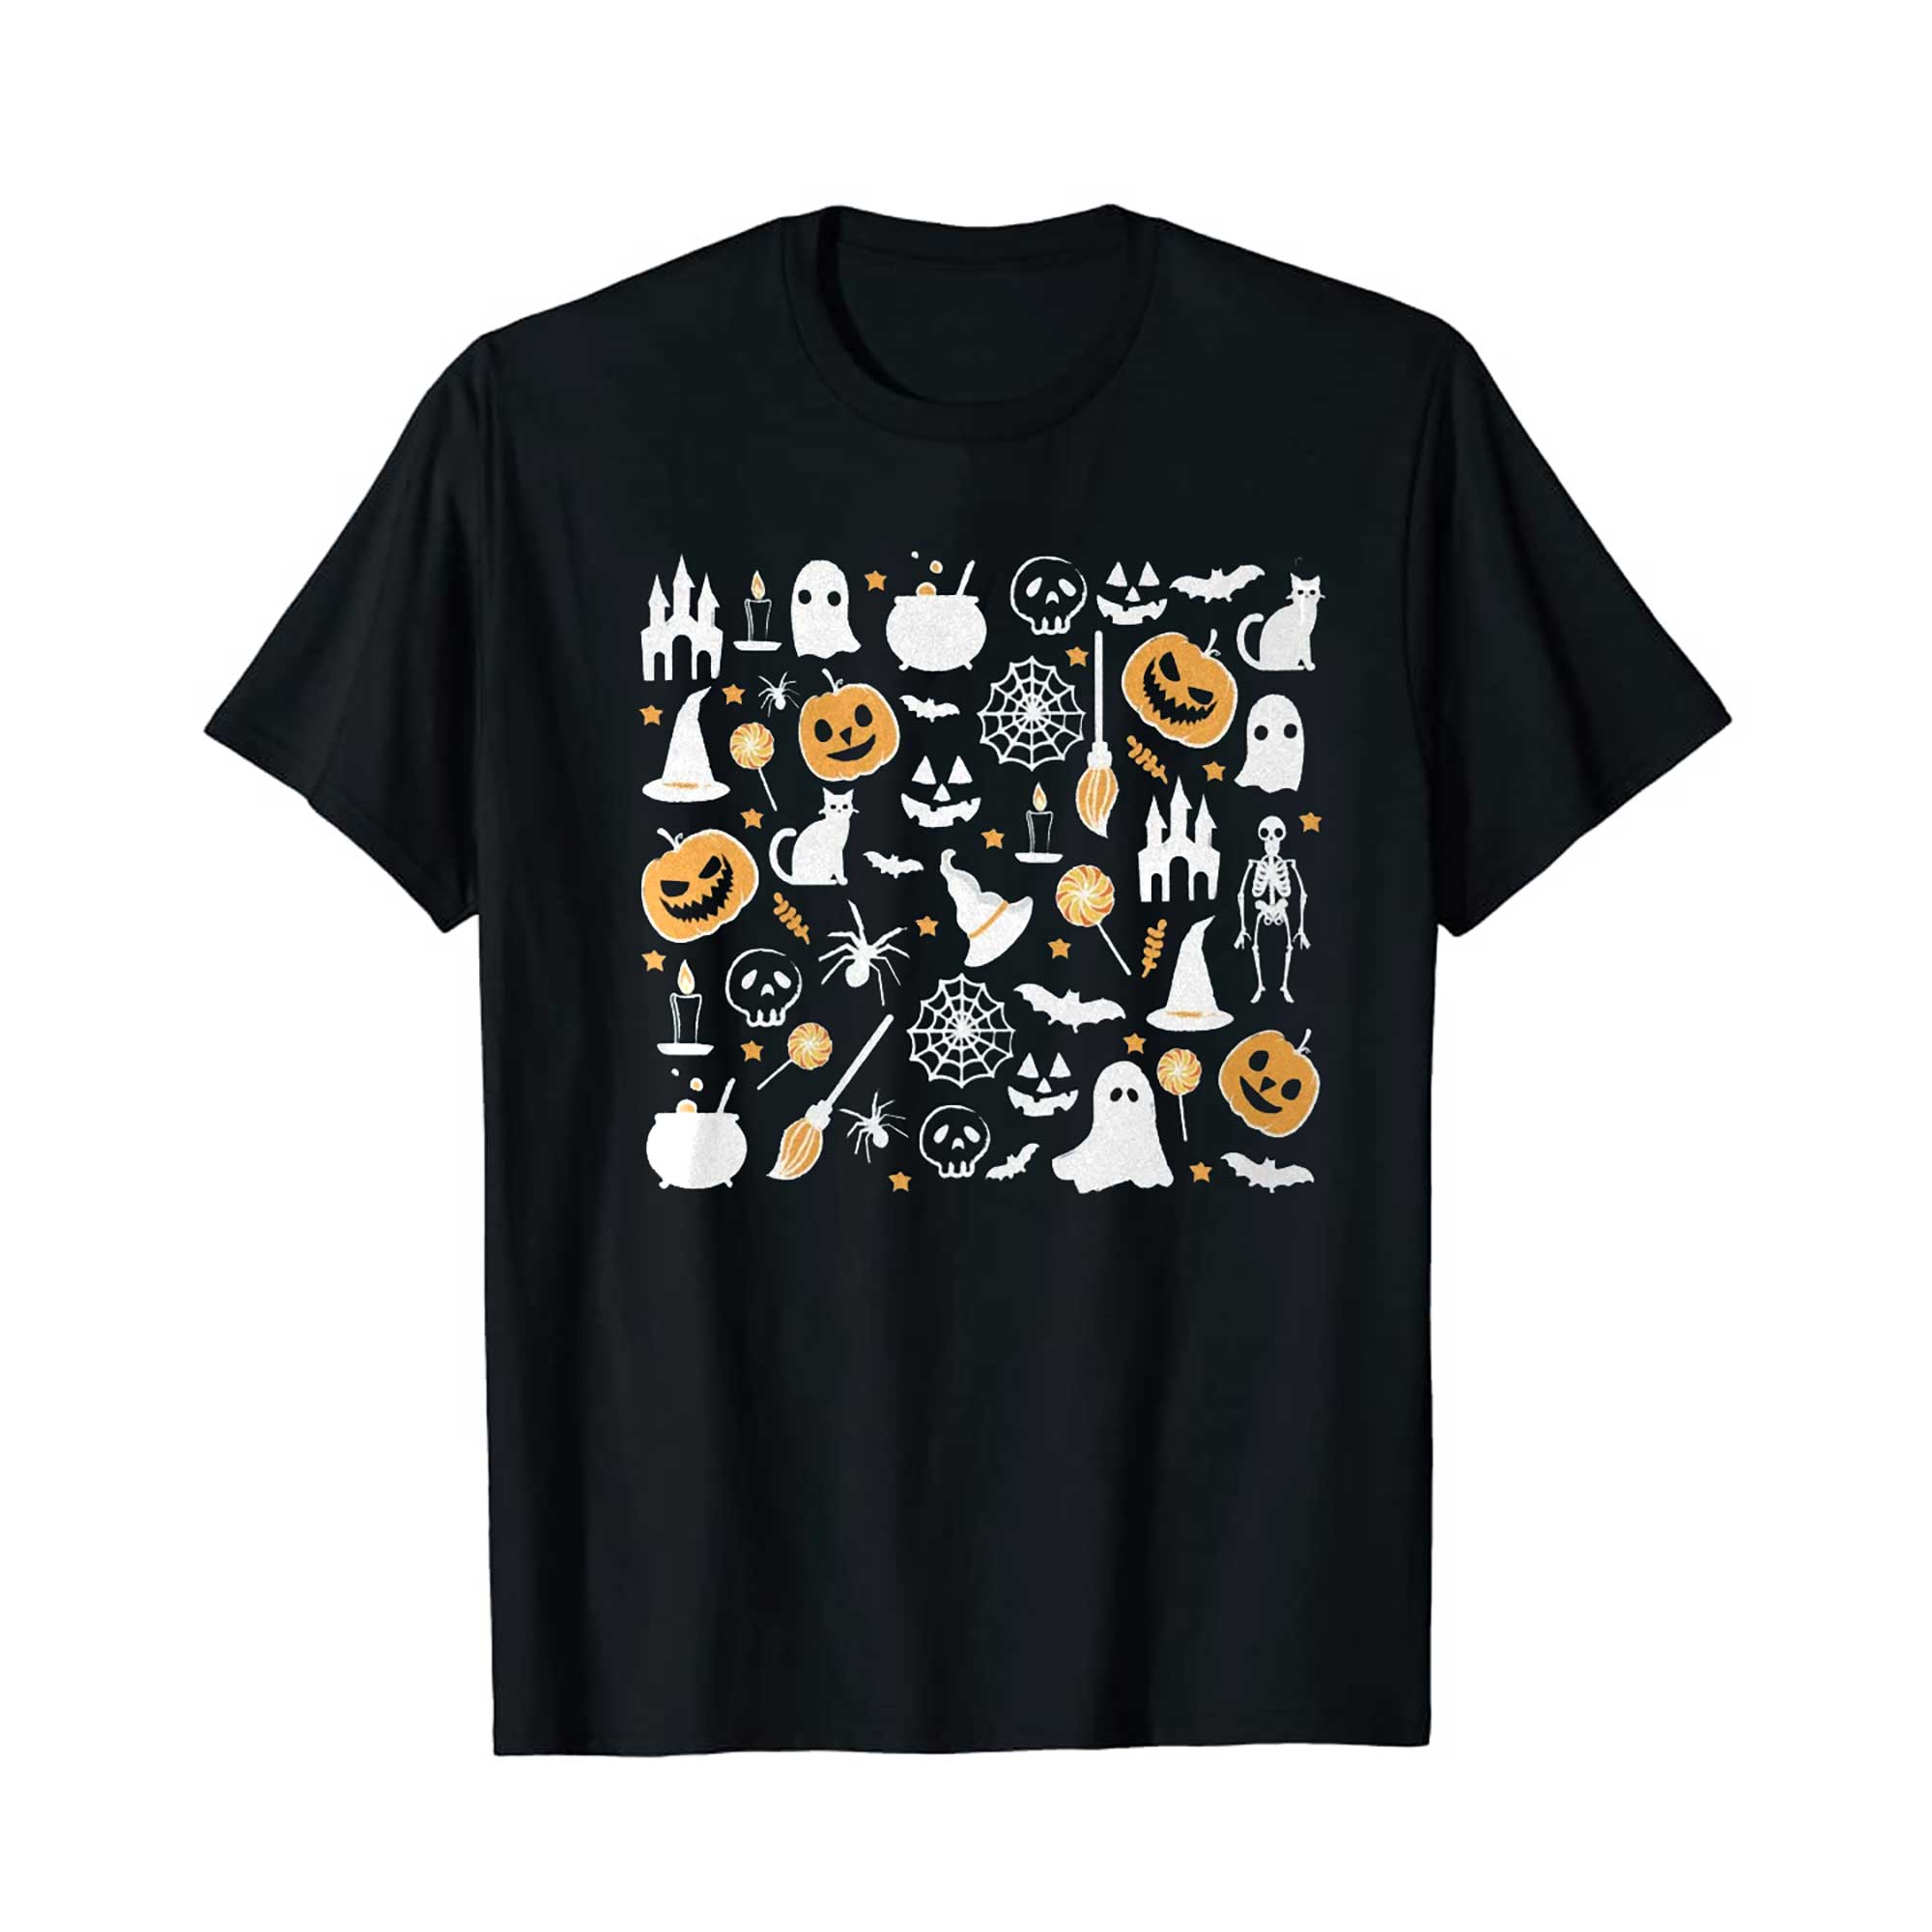 Skitongift Cute Halloween Theme Shirt for Women, Halloween T Shirts, Cute Teacher Halloween T Shirts, Mom Halloween T Shirts, Fall Shirts